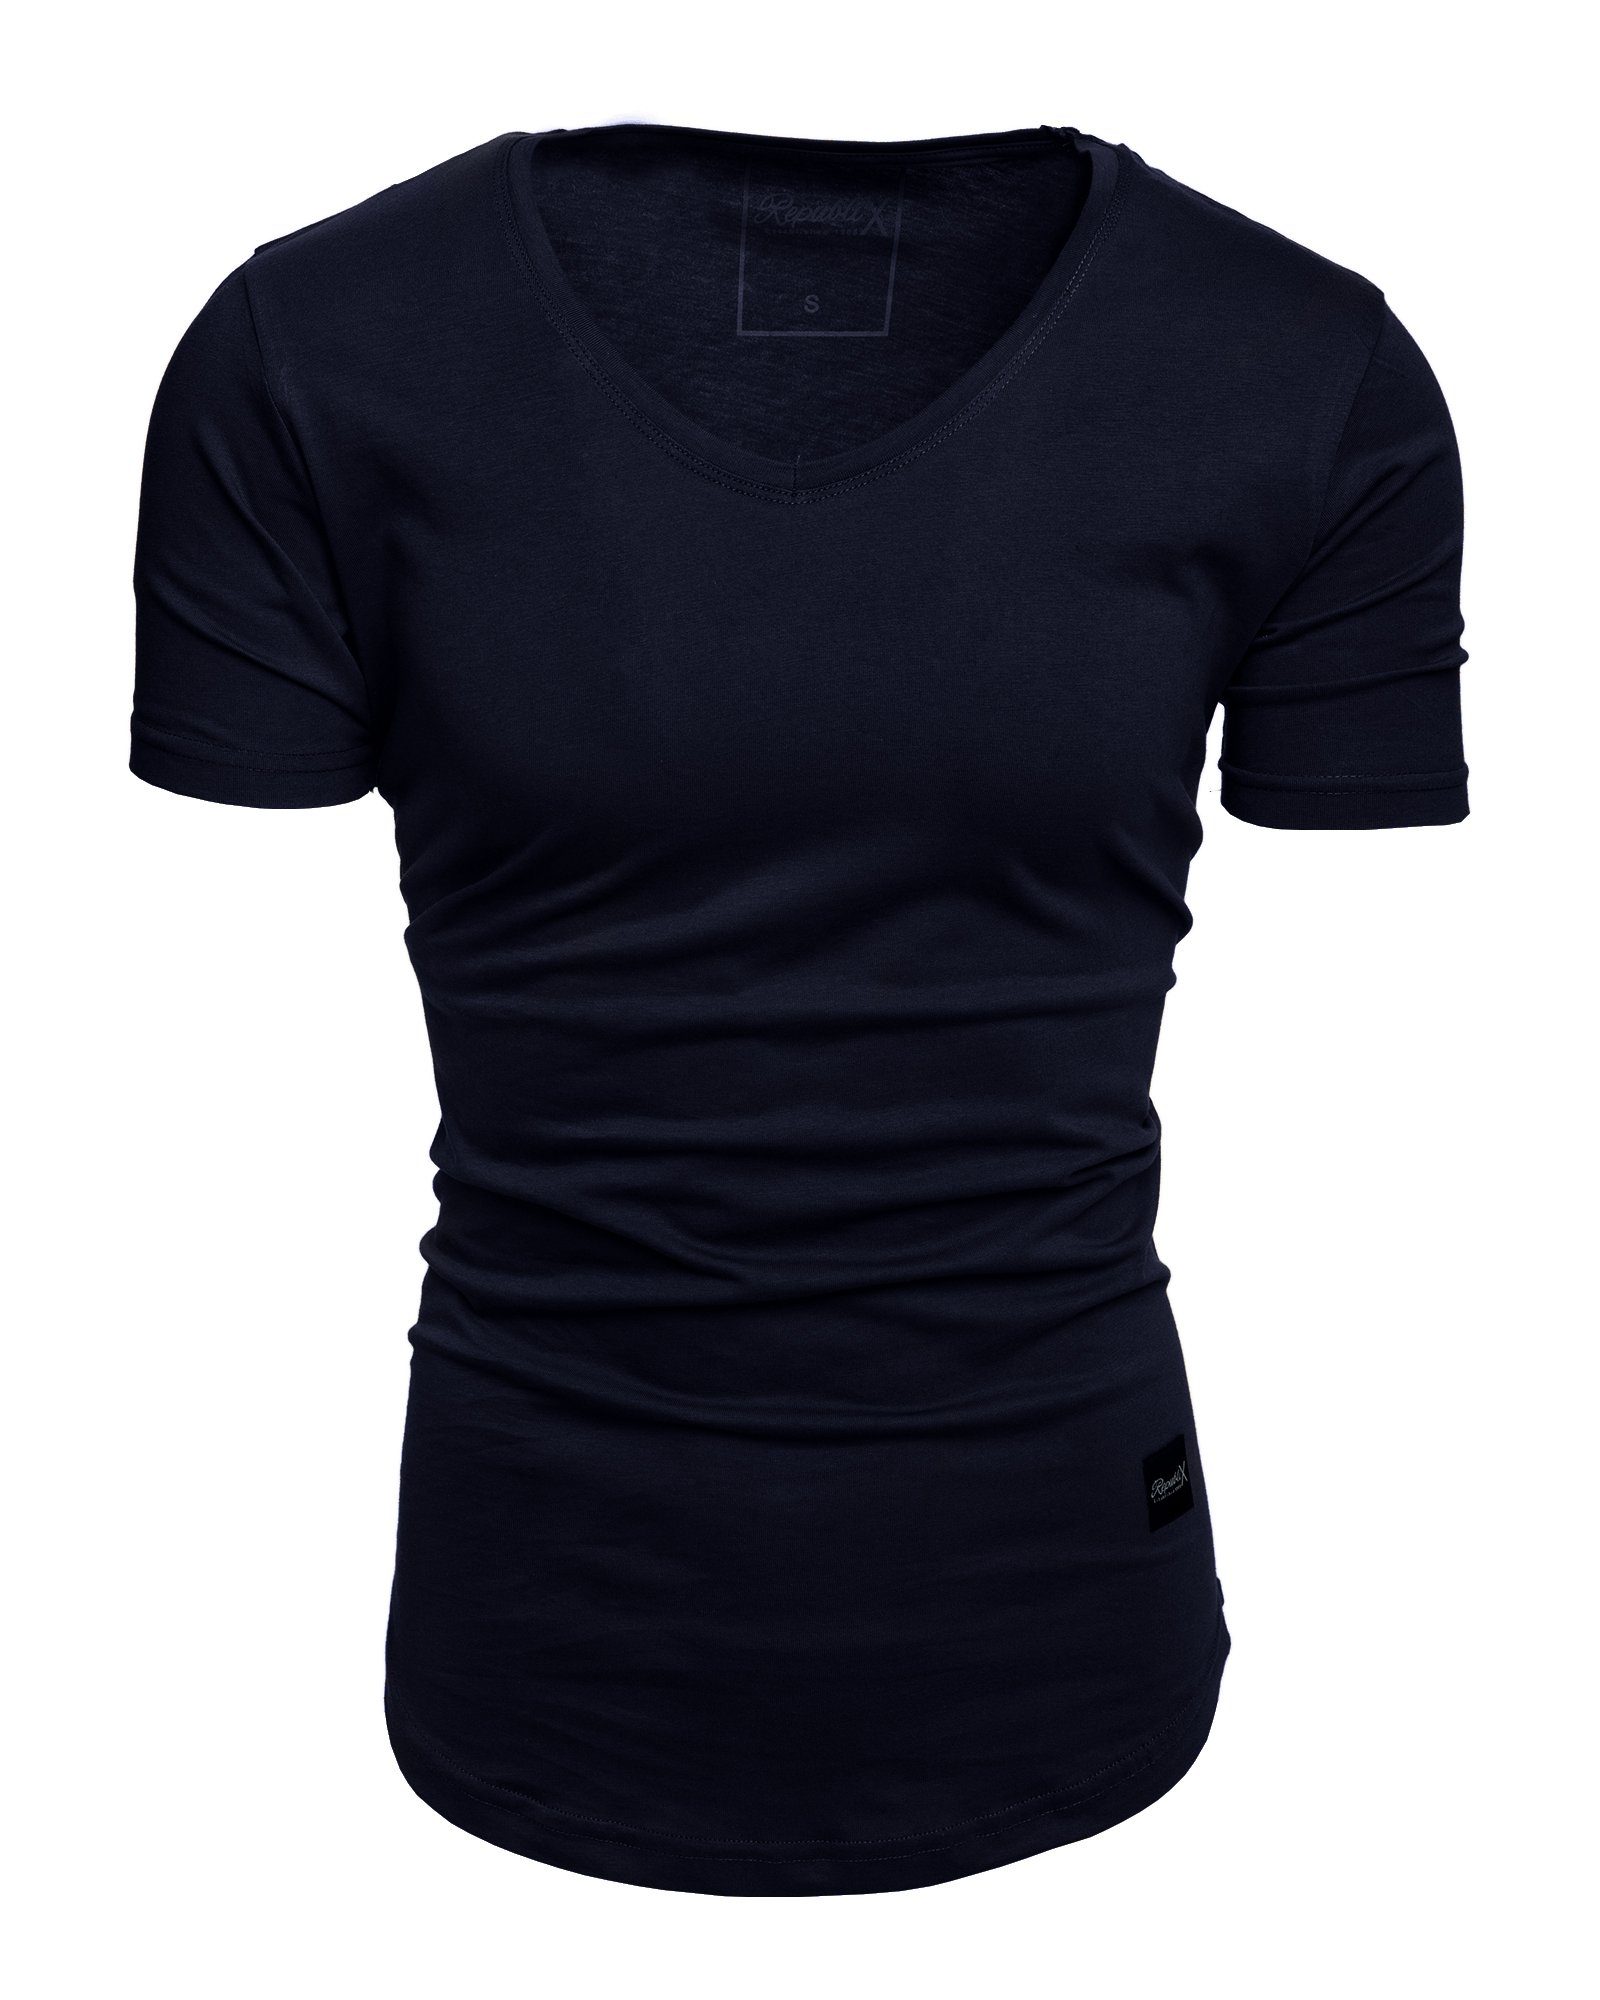 REPUBLIX T-Shirt BRANDON Herren Oversize Basic Shirt mit V-Ausschnitt